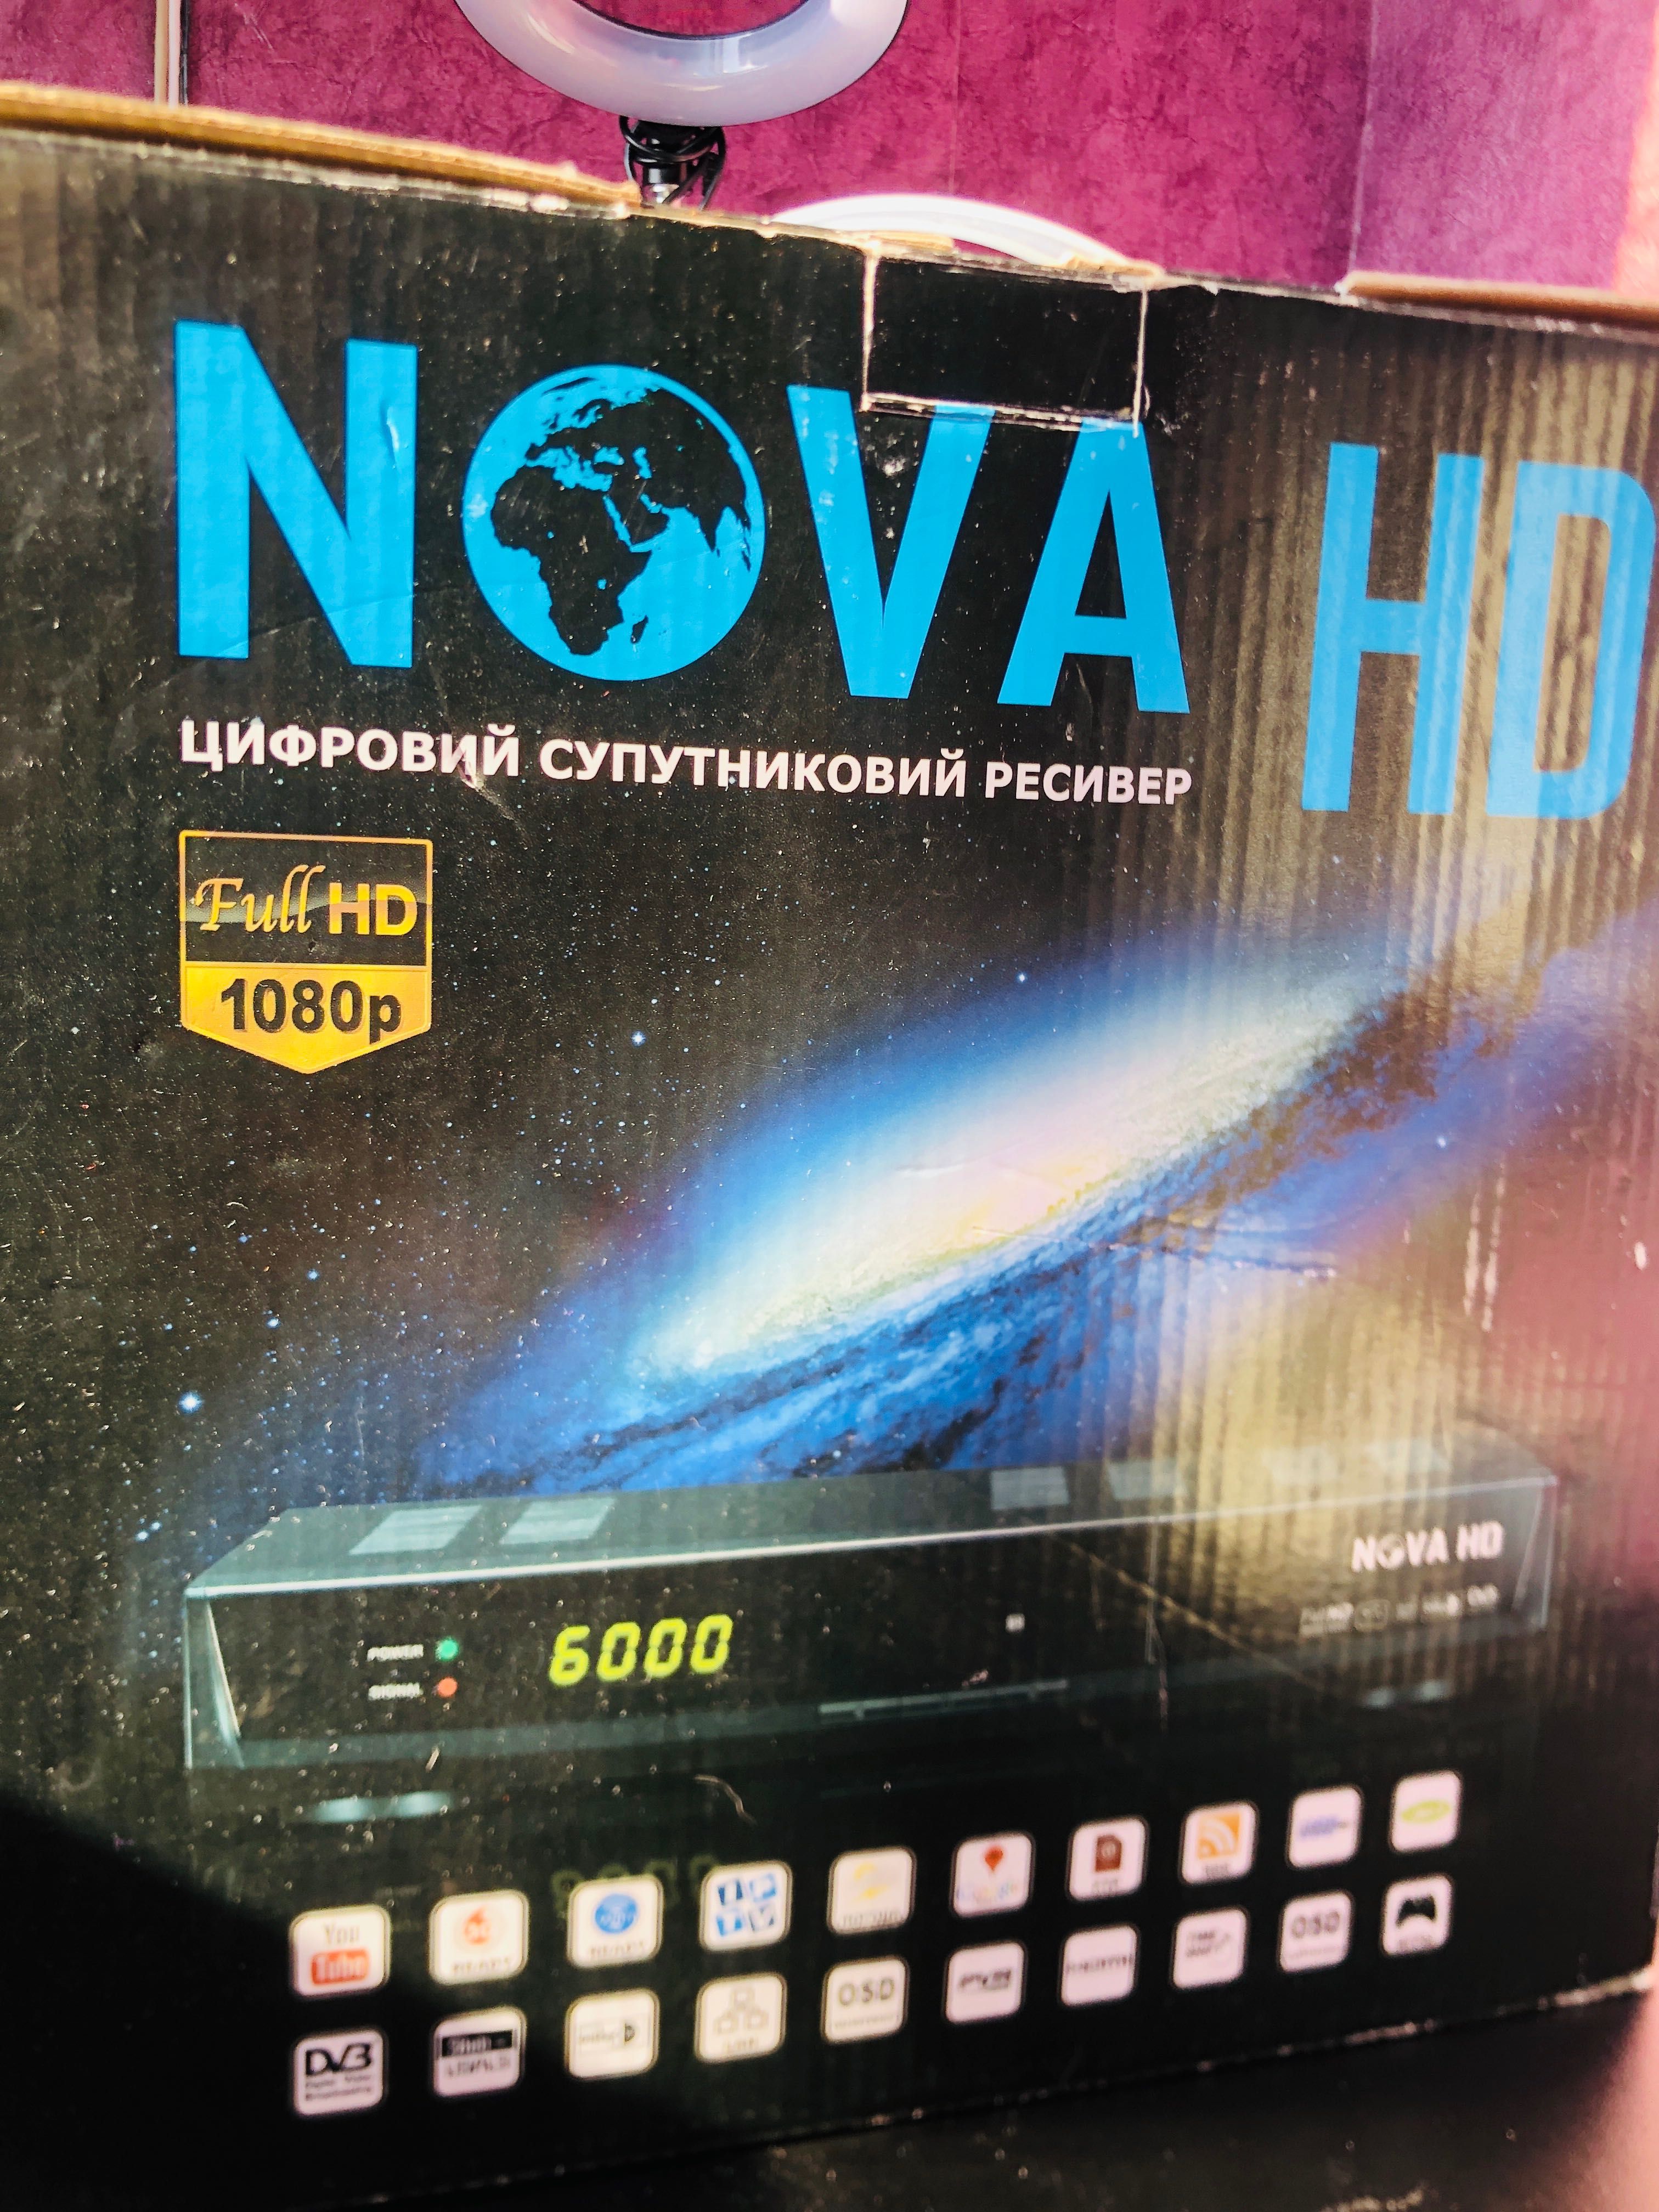 цифровий супутниковий ресивер nova